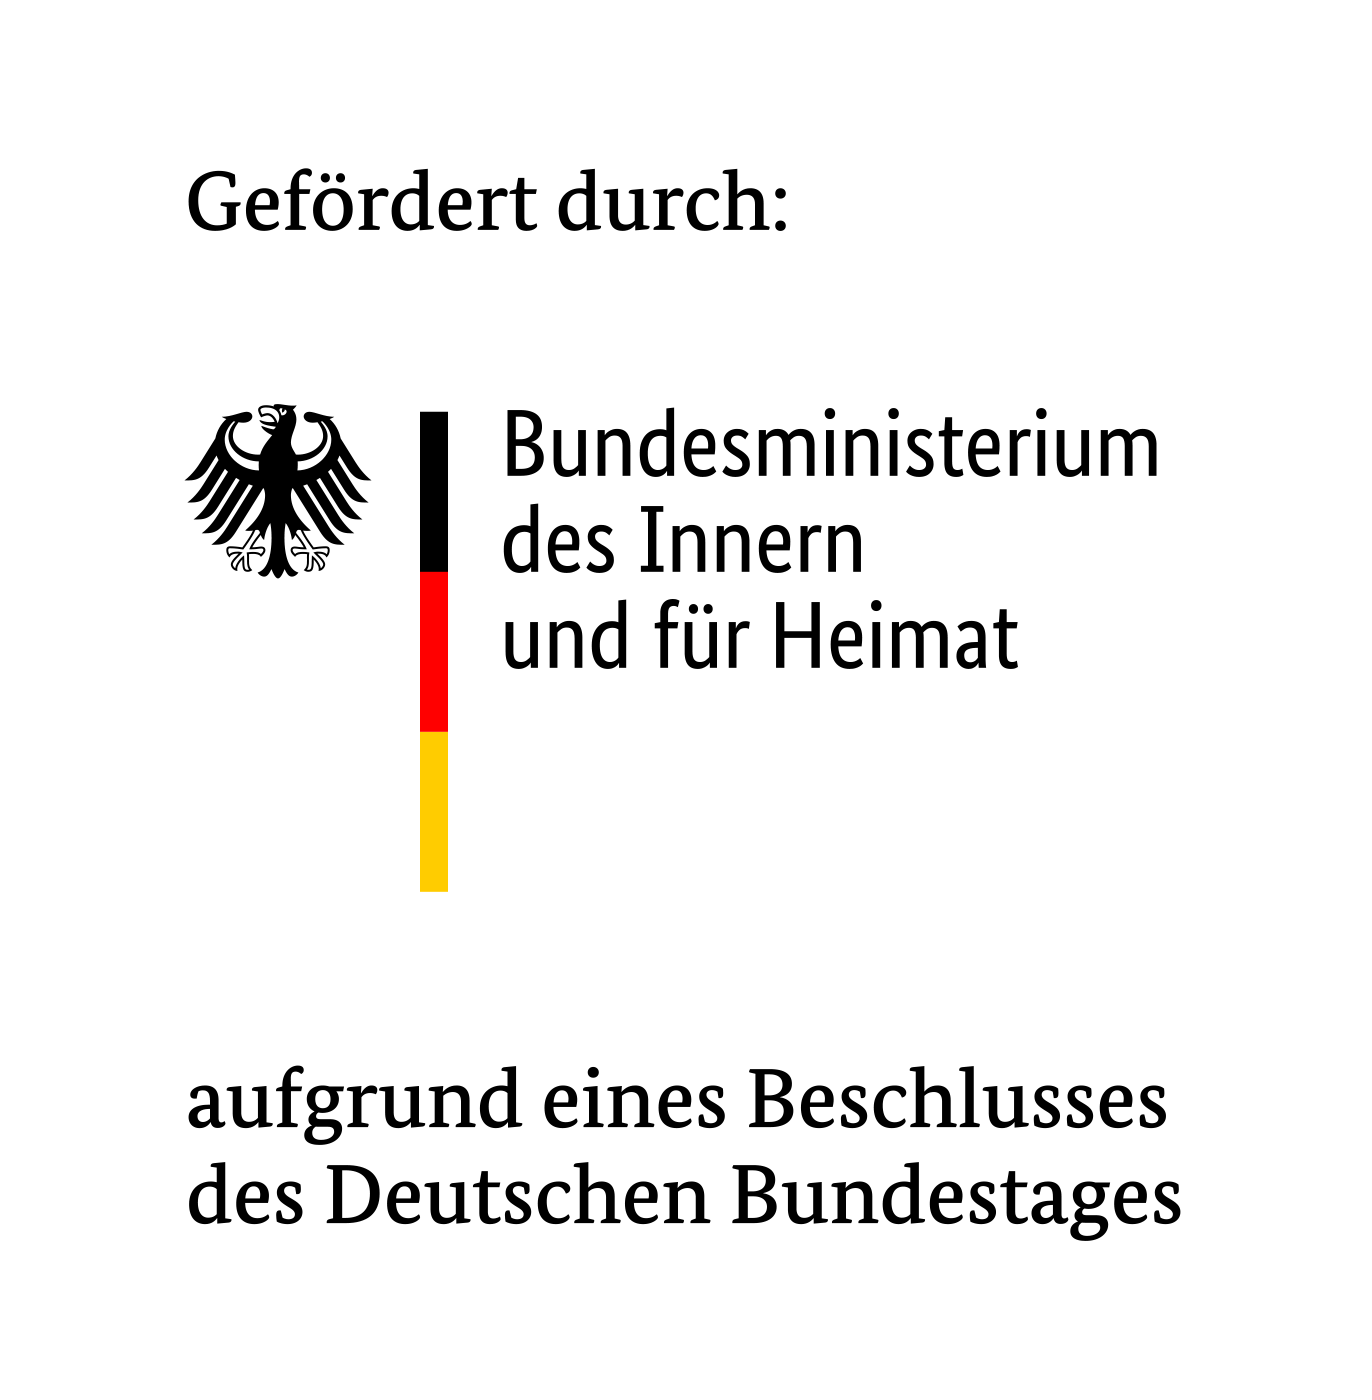 Logo: efördert durch: Bundesministerium der Inneren und für Heimat